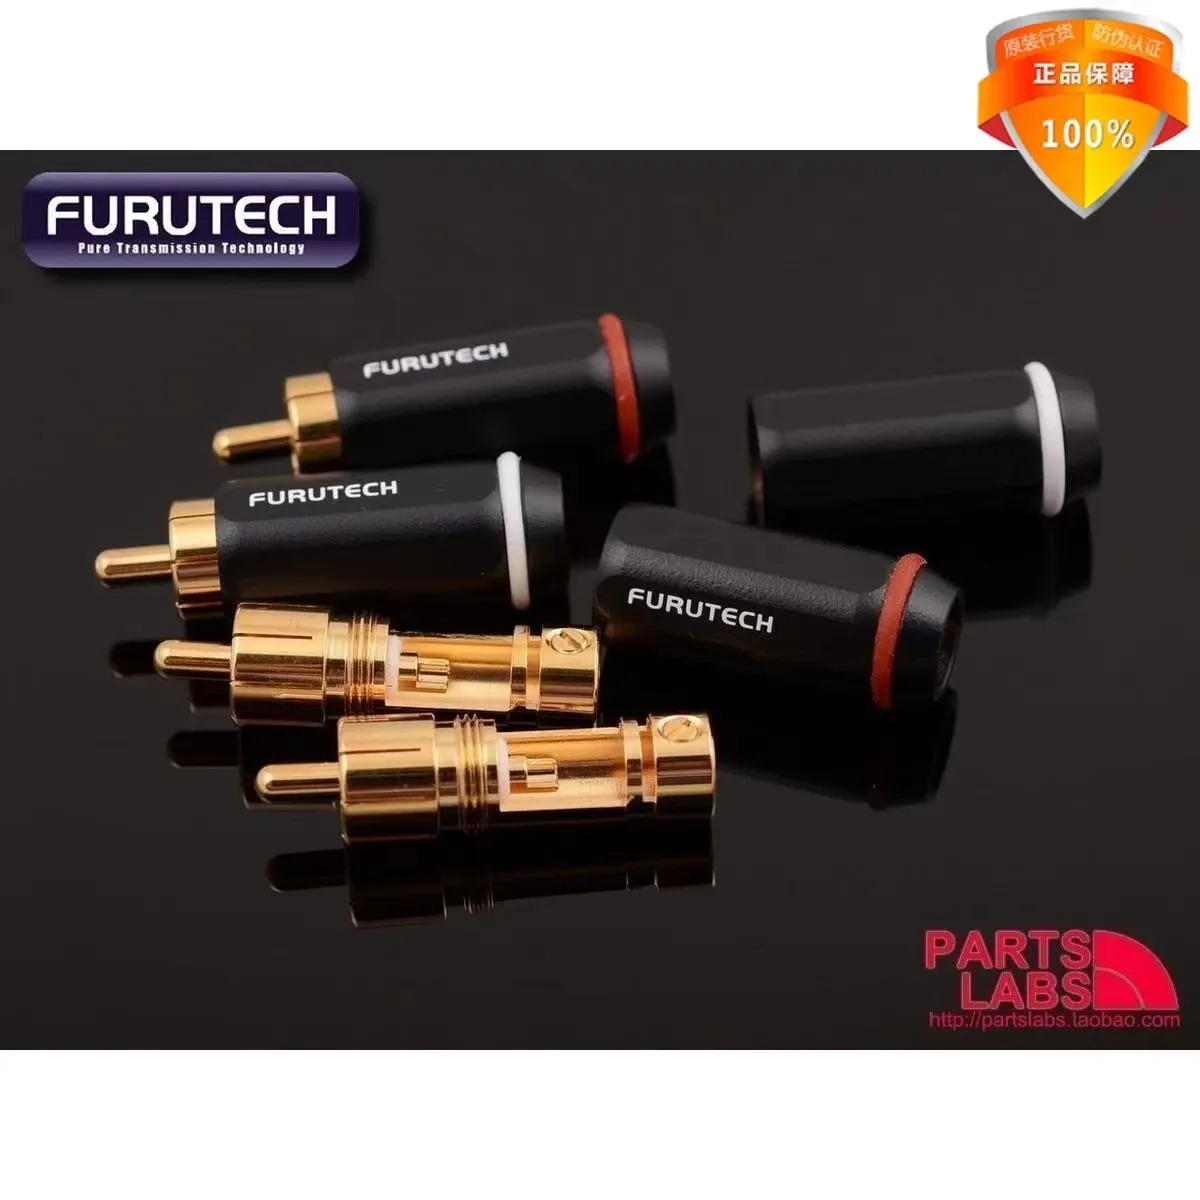 Akcesoria Furukawa Oryginalny proces Furutech Alpha FP126 Goldplated Audiofil RCA Wtyczka Wtyczka HiFi Audio Kabel OD ≤7 mm